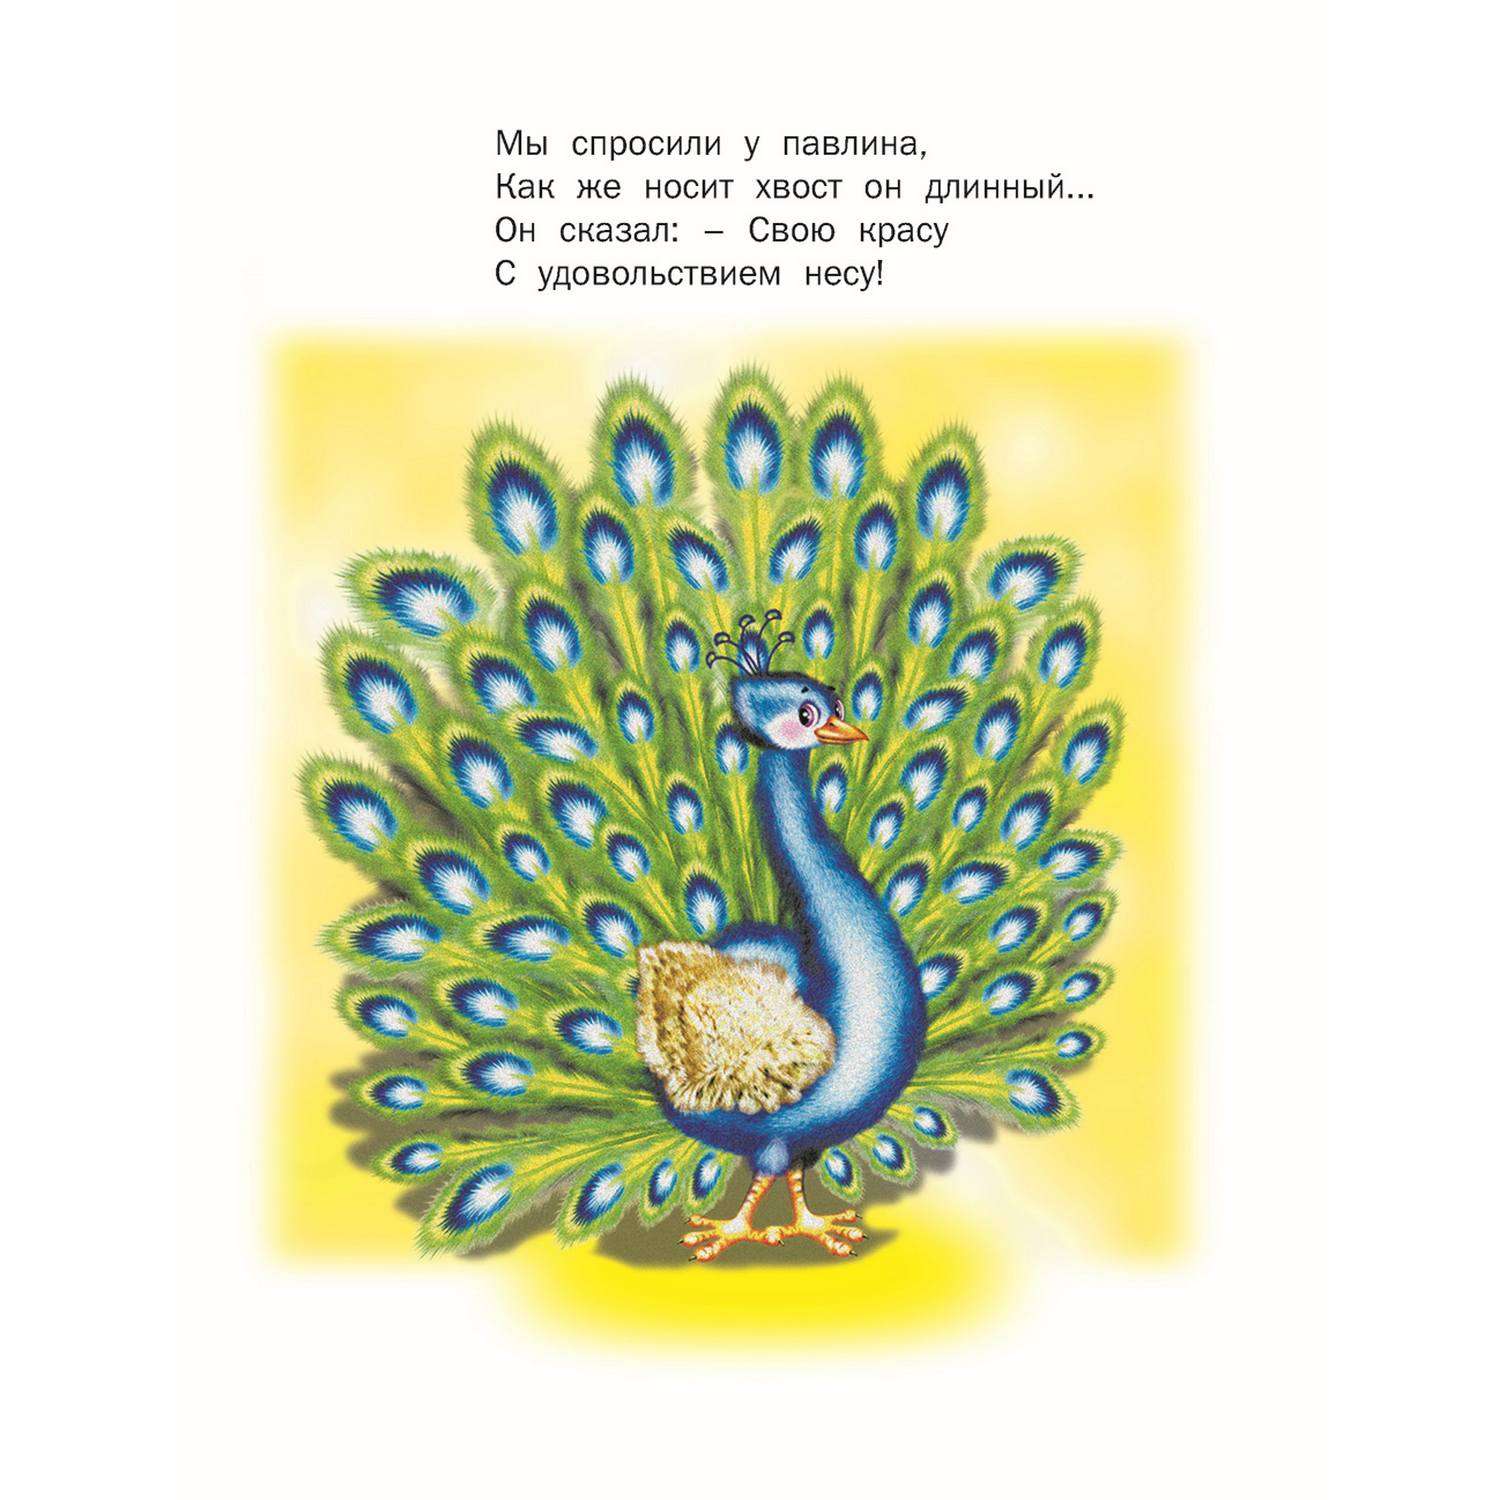 Набор книг Русич стихи сказки и загадки для малышей 6 шт - фото 10